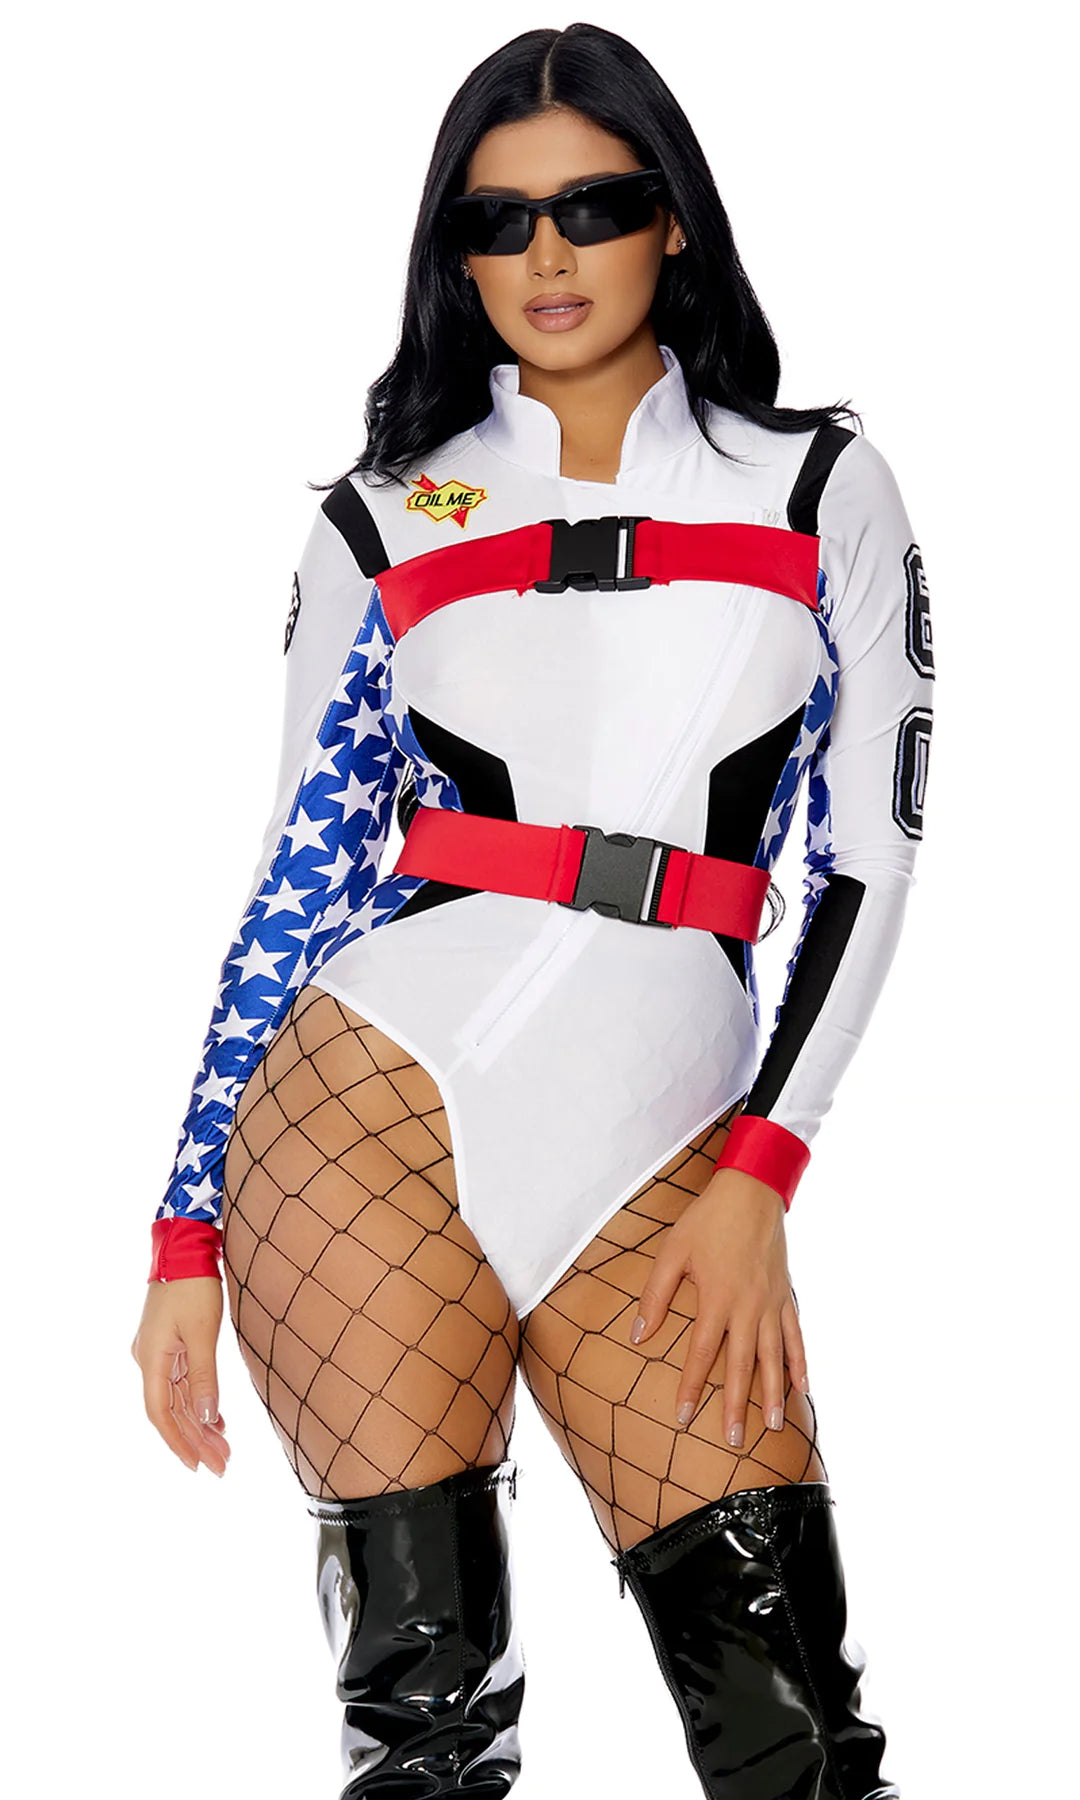 Motocross Sexy Racer Costume